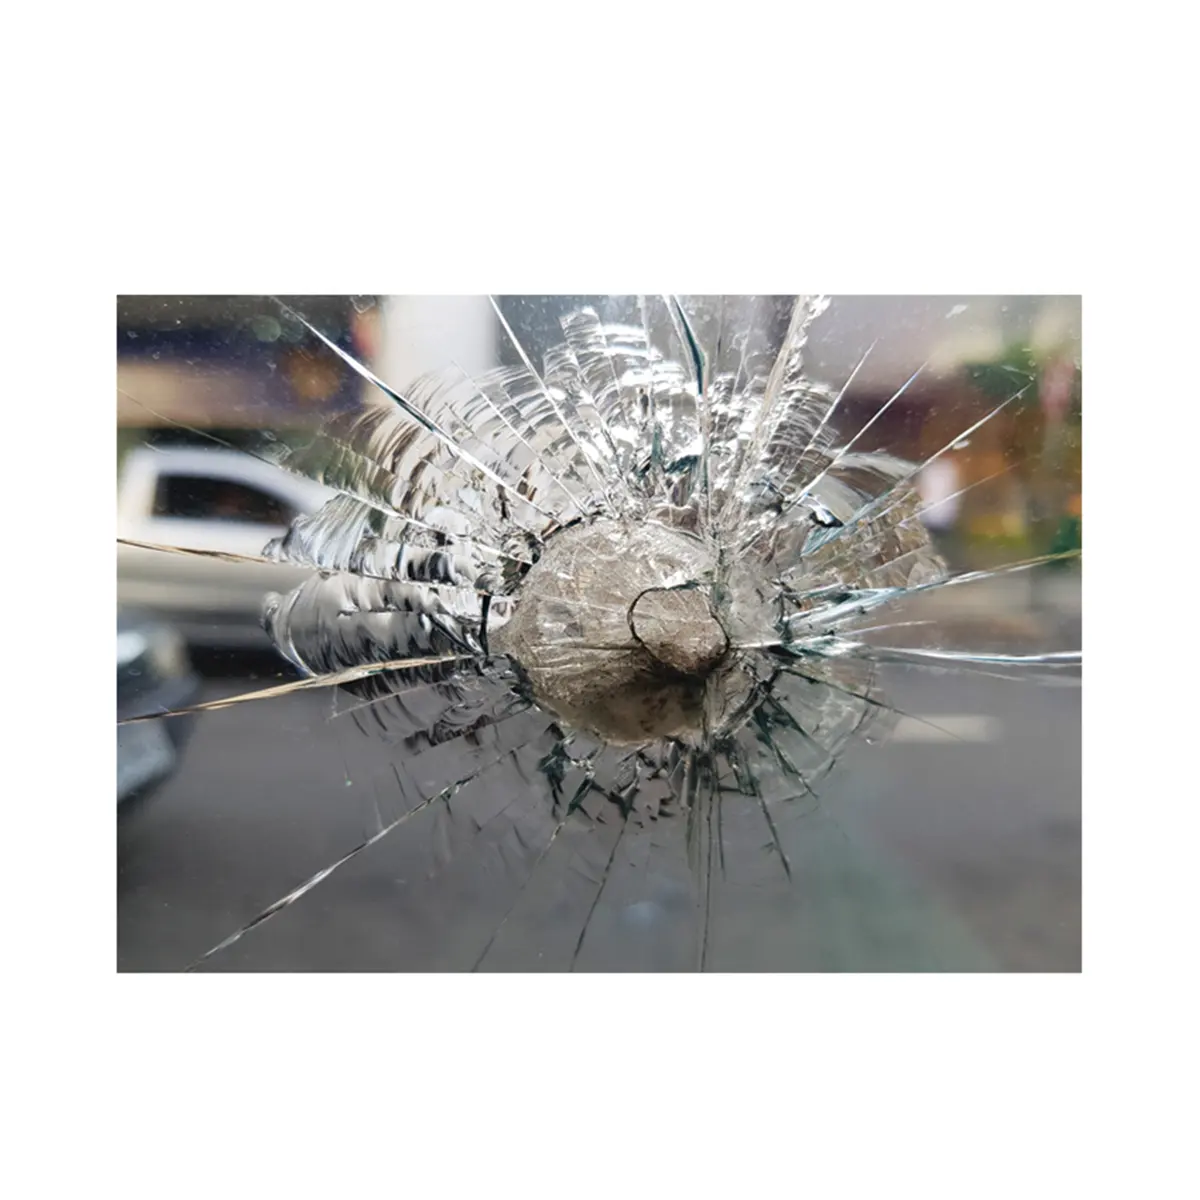 Пуленепробиваемое стекло, непоколебимая защита в ситуациях высокого риска с непробиваемым Пуленепробиваемым стеклом